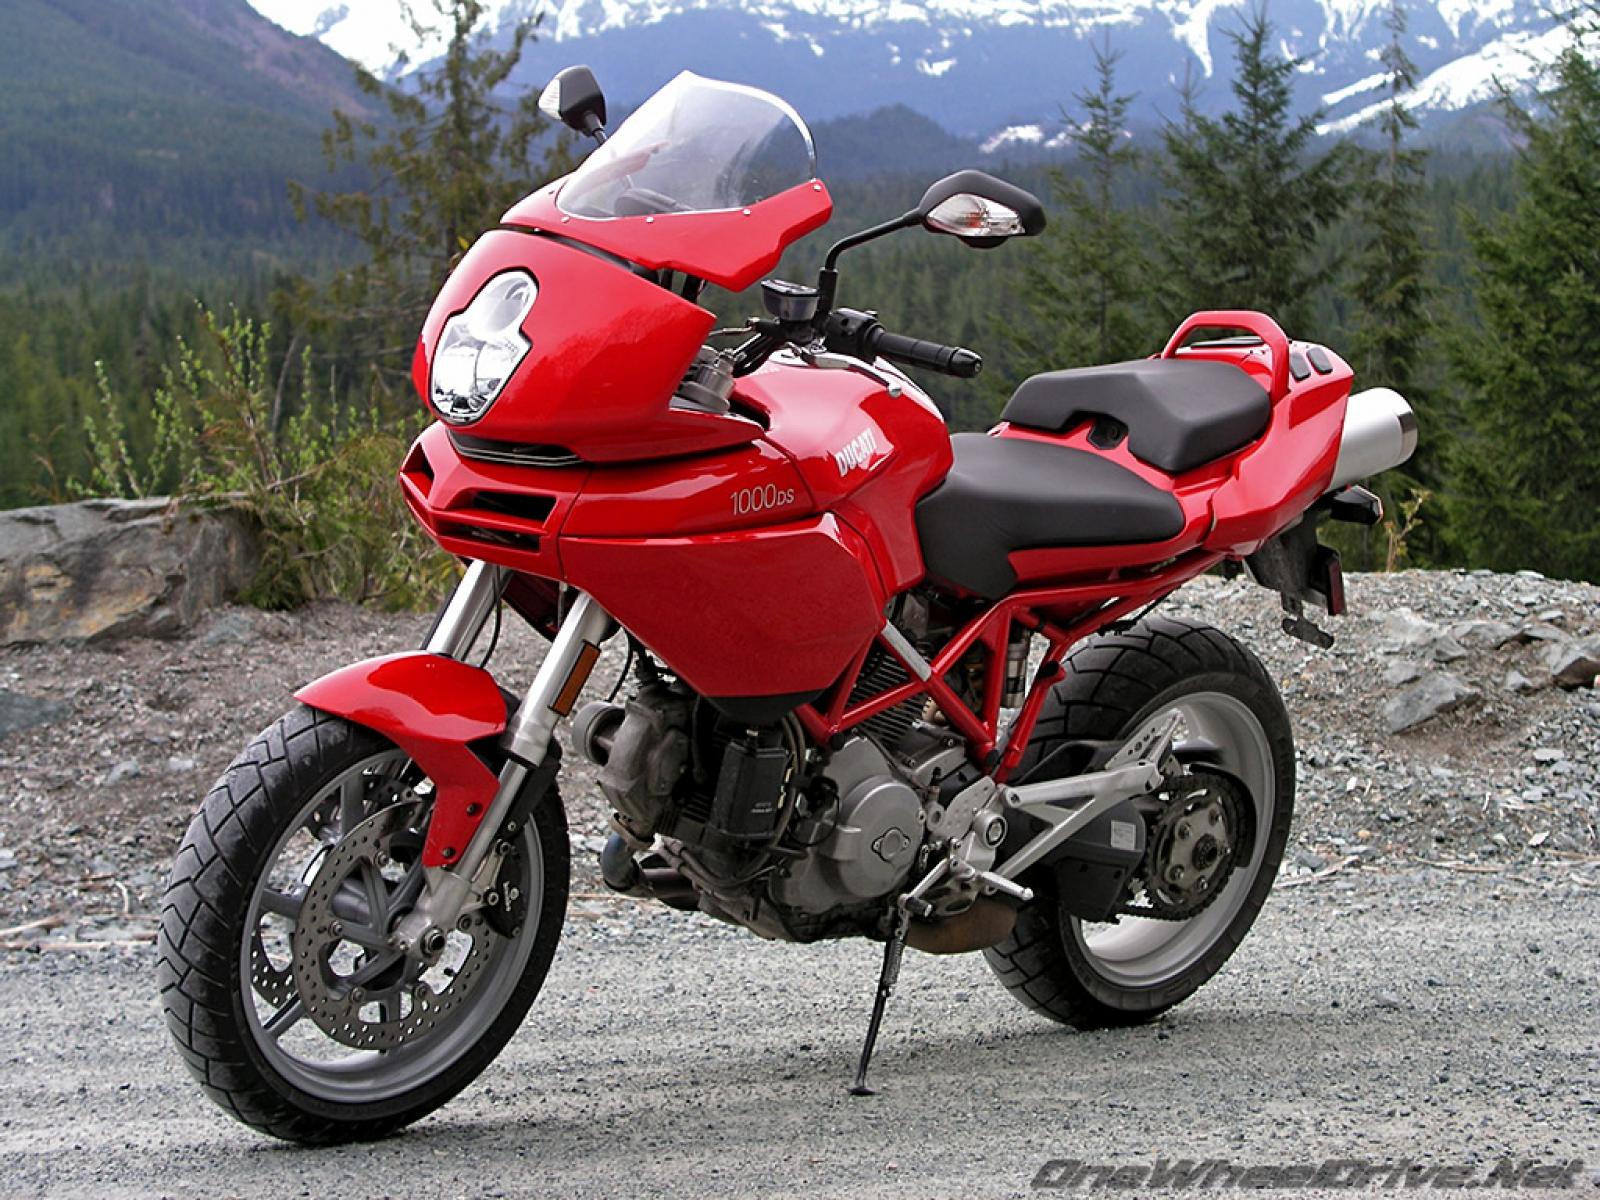 Купить мотоцикл бу в краснодарском. Ducati Multistrada 1000 DS. Ducati Multistrada 1000 s. Ducati Multistrada 1100s. Ducati Multistrada 620 2007.